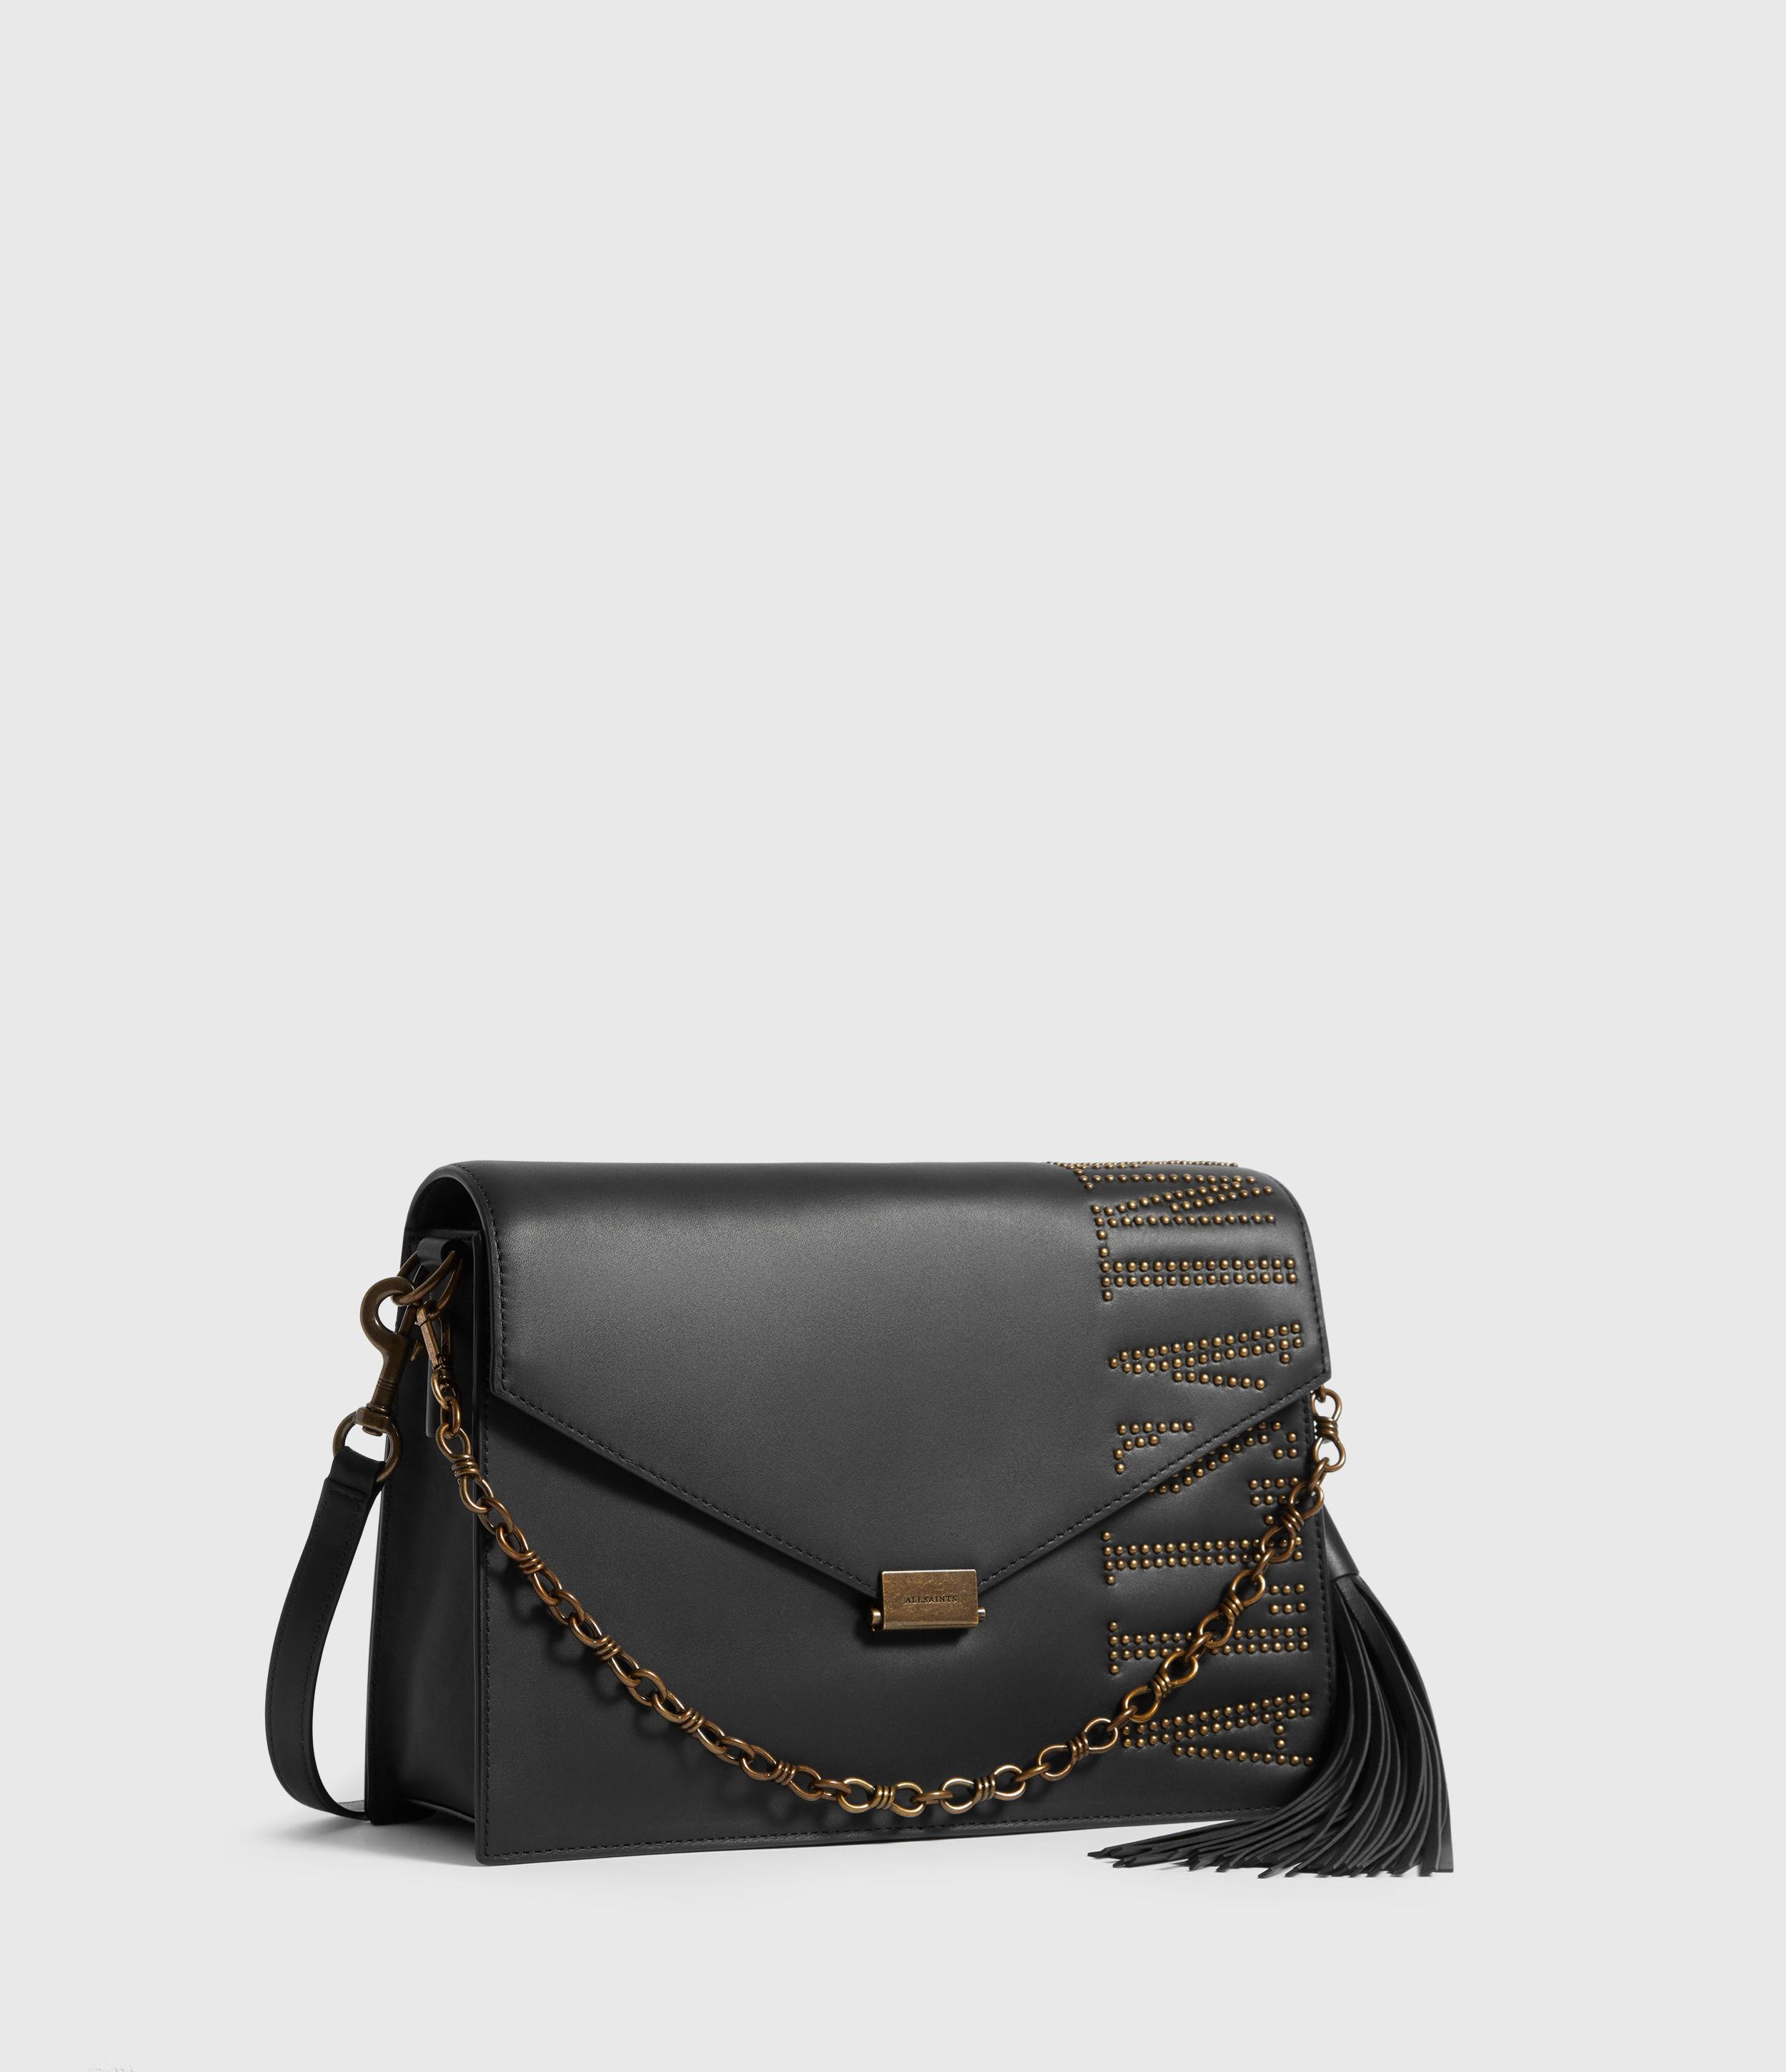 AllSaints Nina Stud Leather Shoulder Bag in Black - Lyst